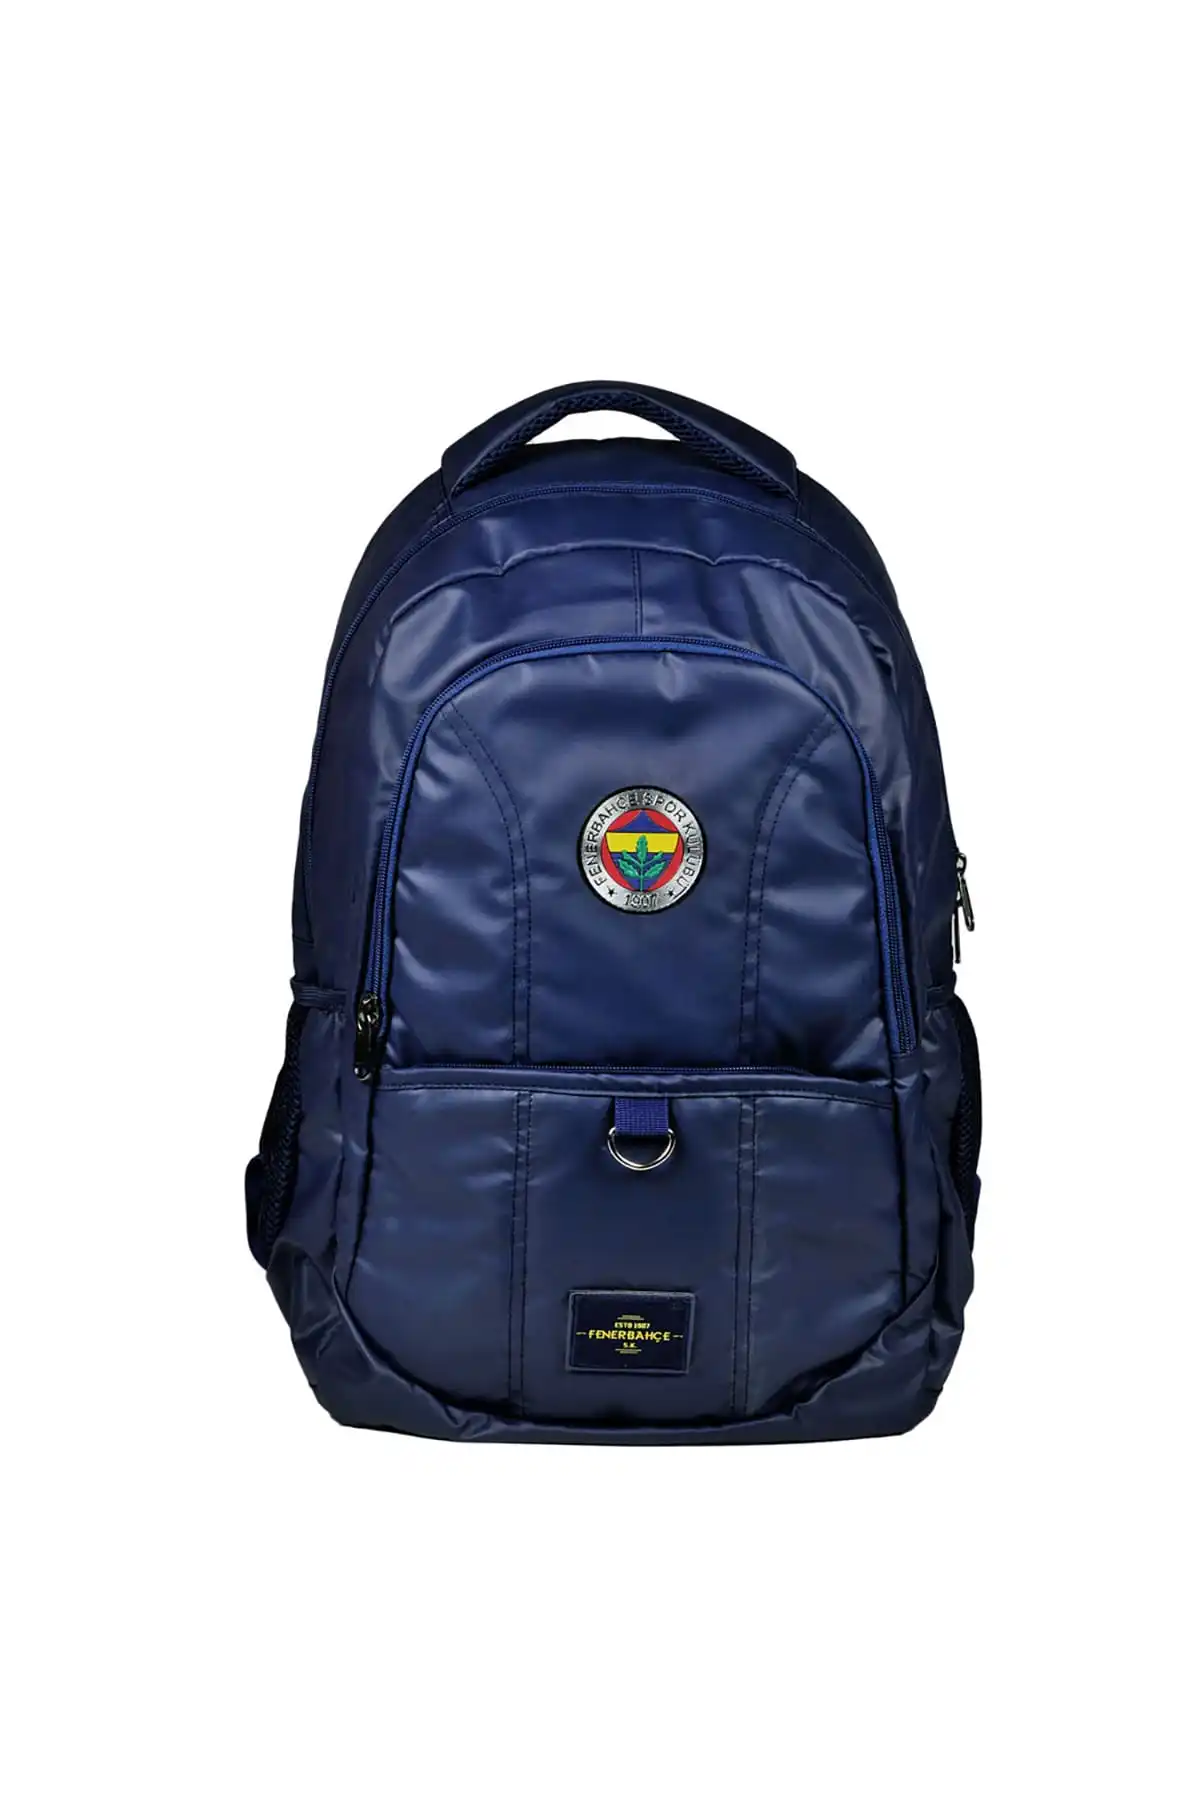 Fenerbahce Backpack